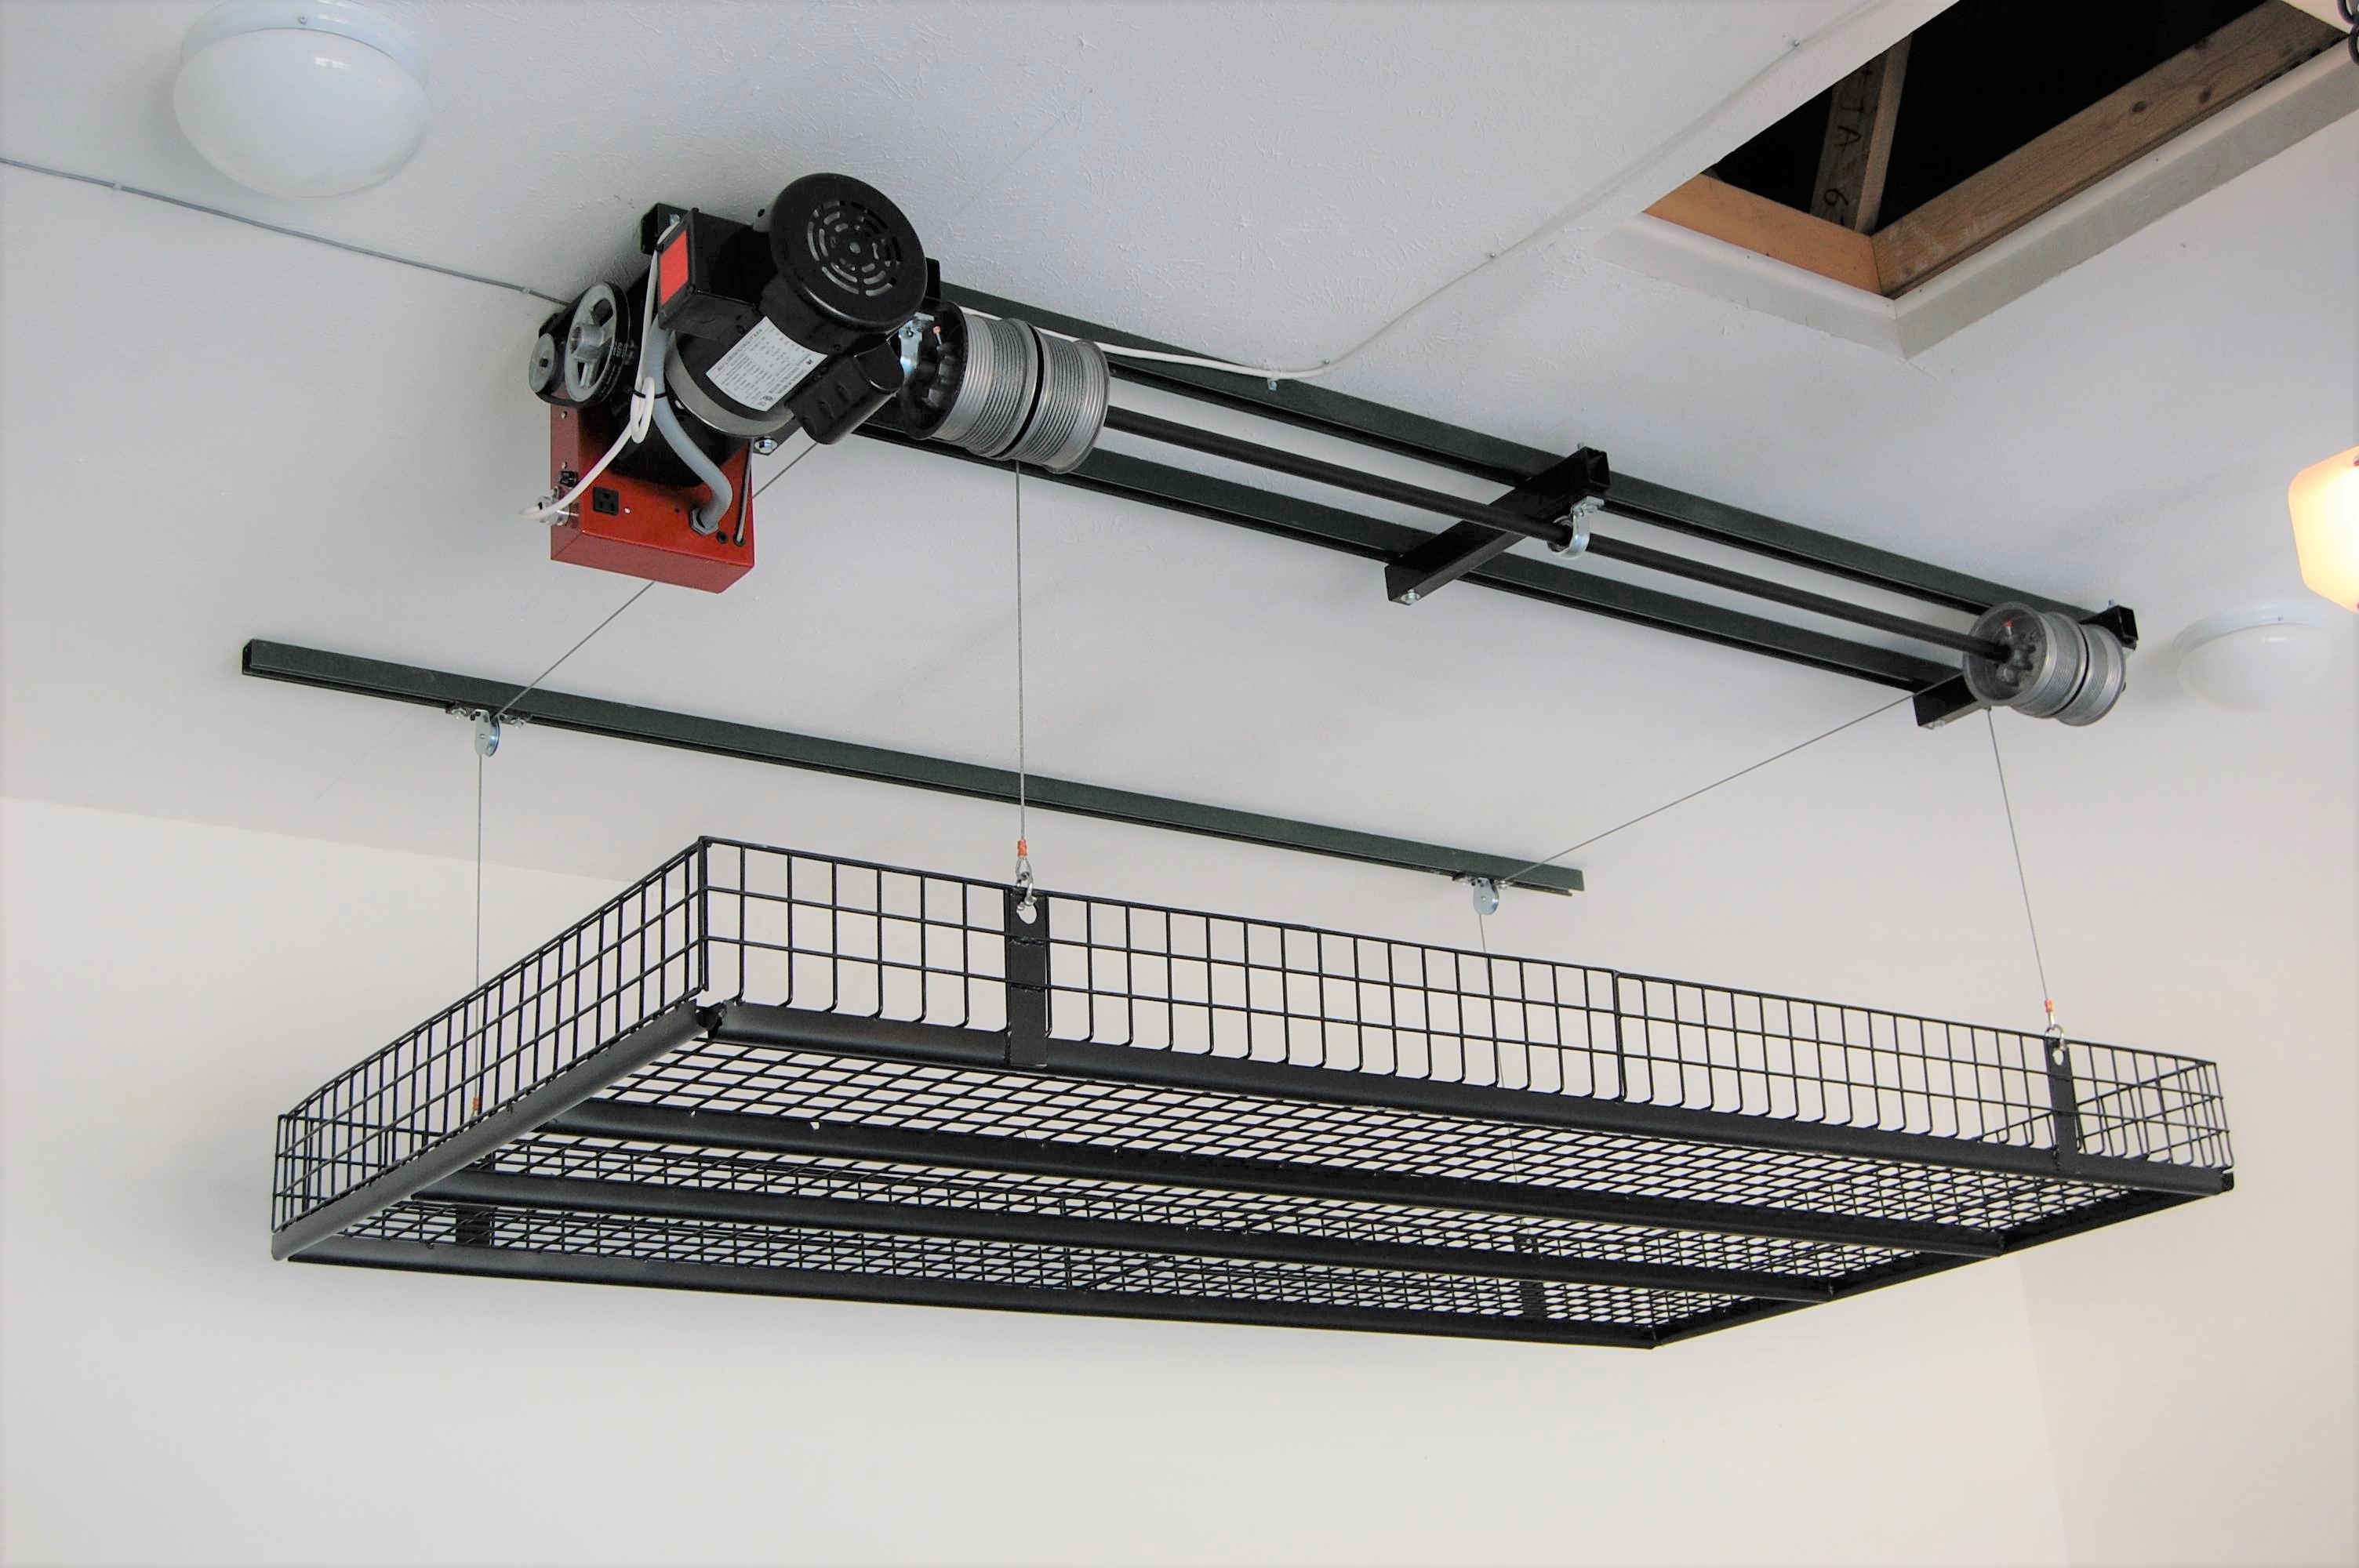 Floß visuell Verlangen garage ceiling storage lift Erleuchten Gasförmig ...